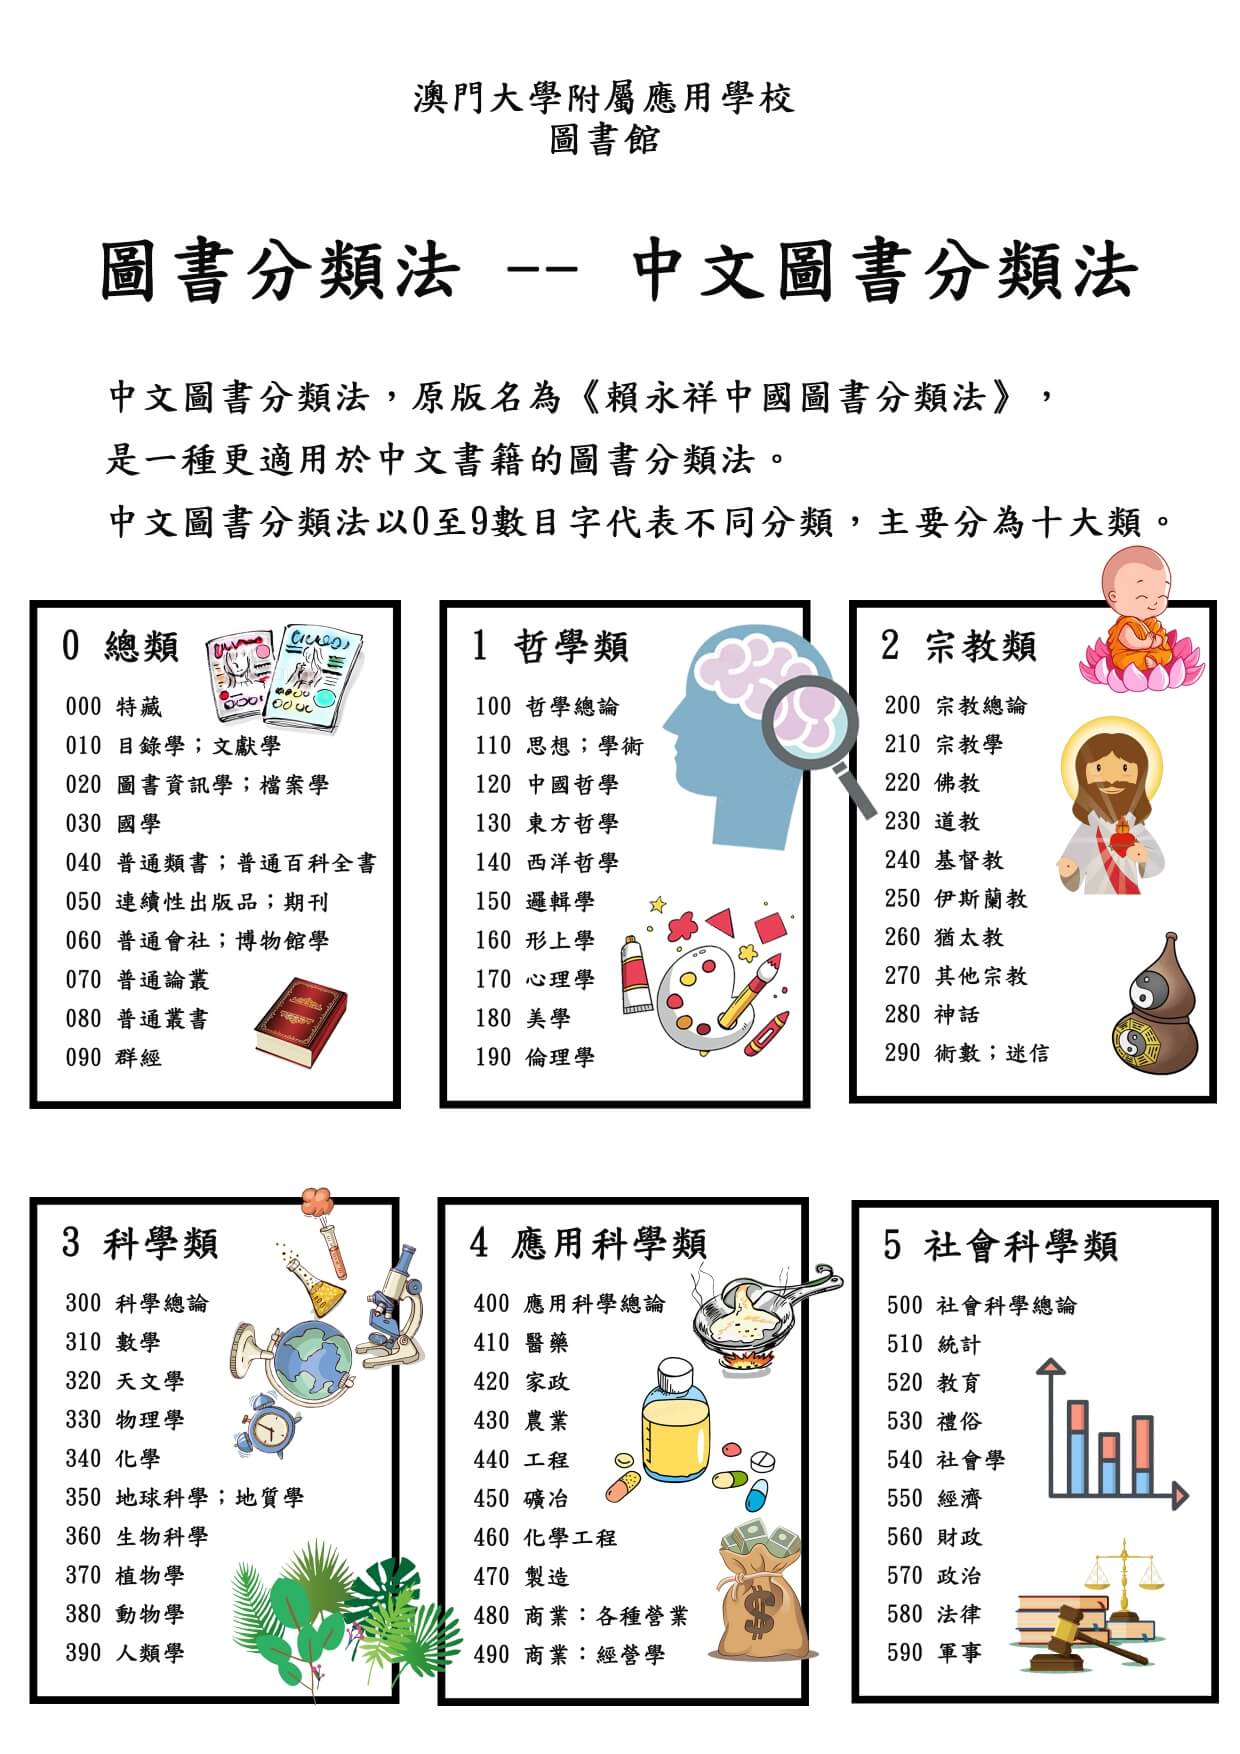 中文圖書分類法01.jpg